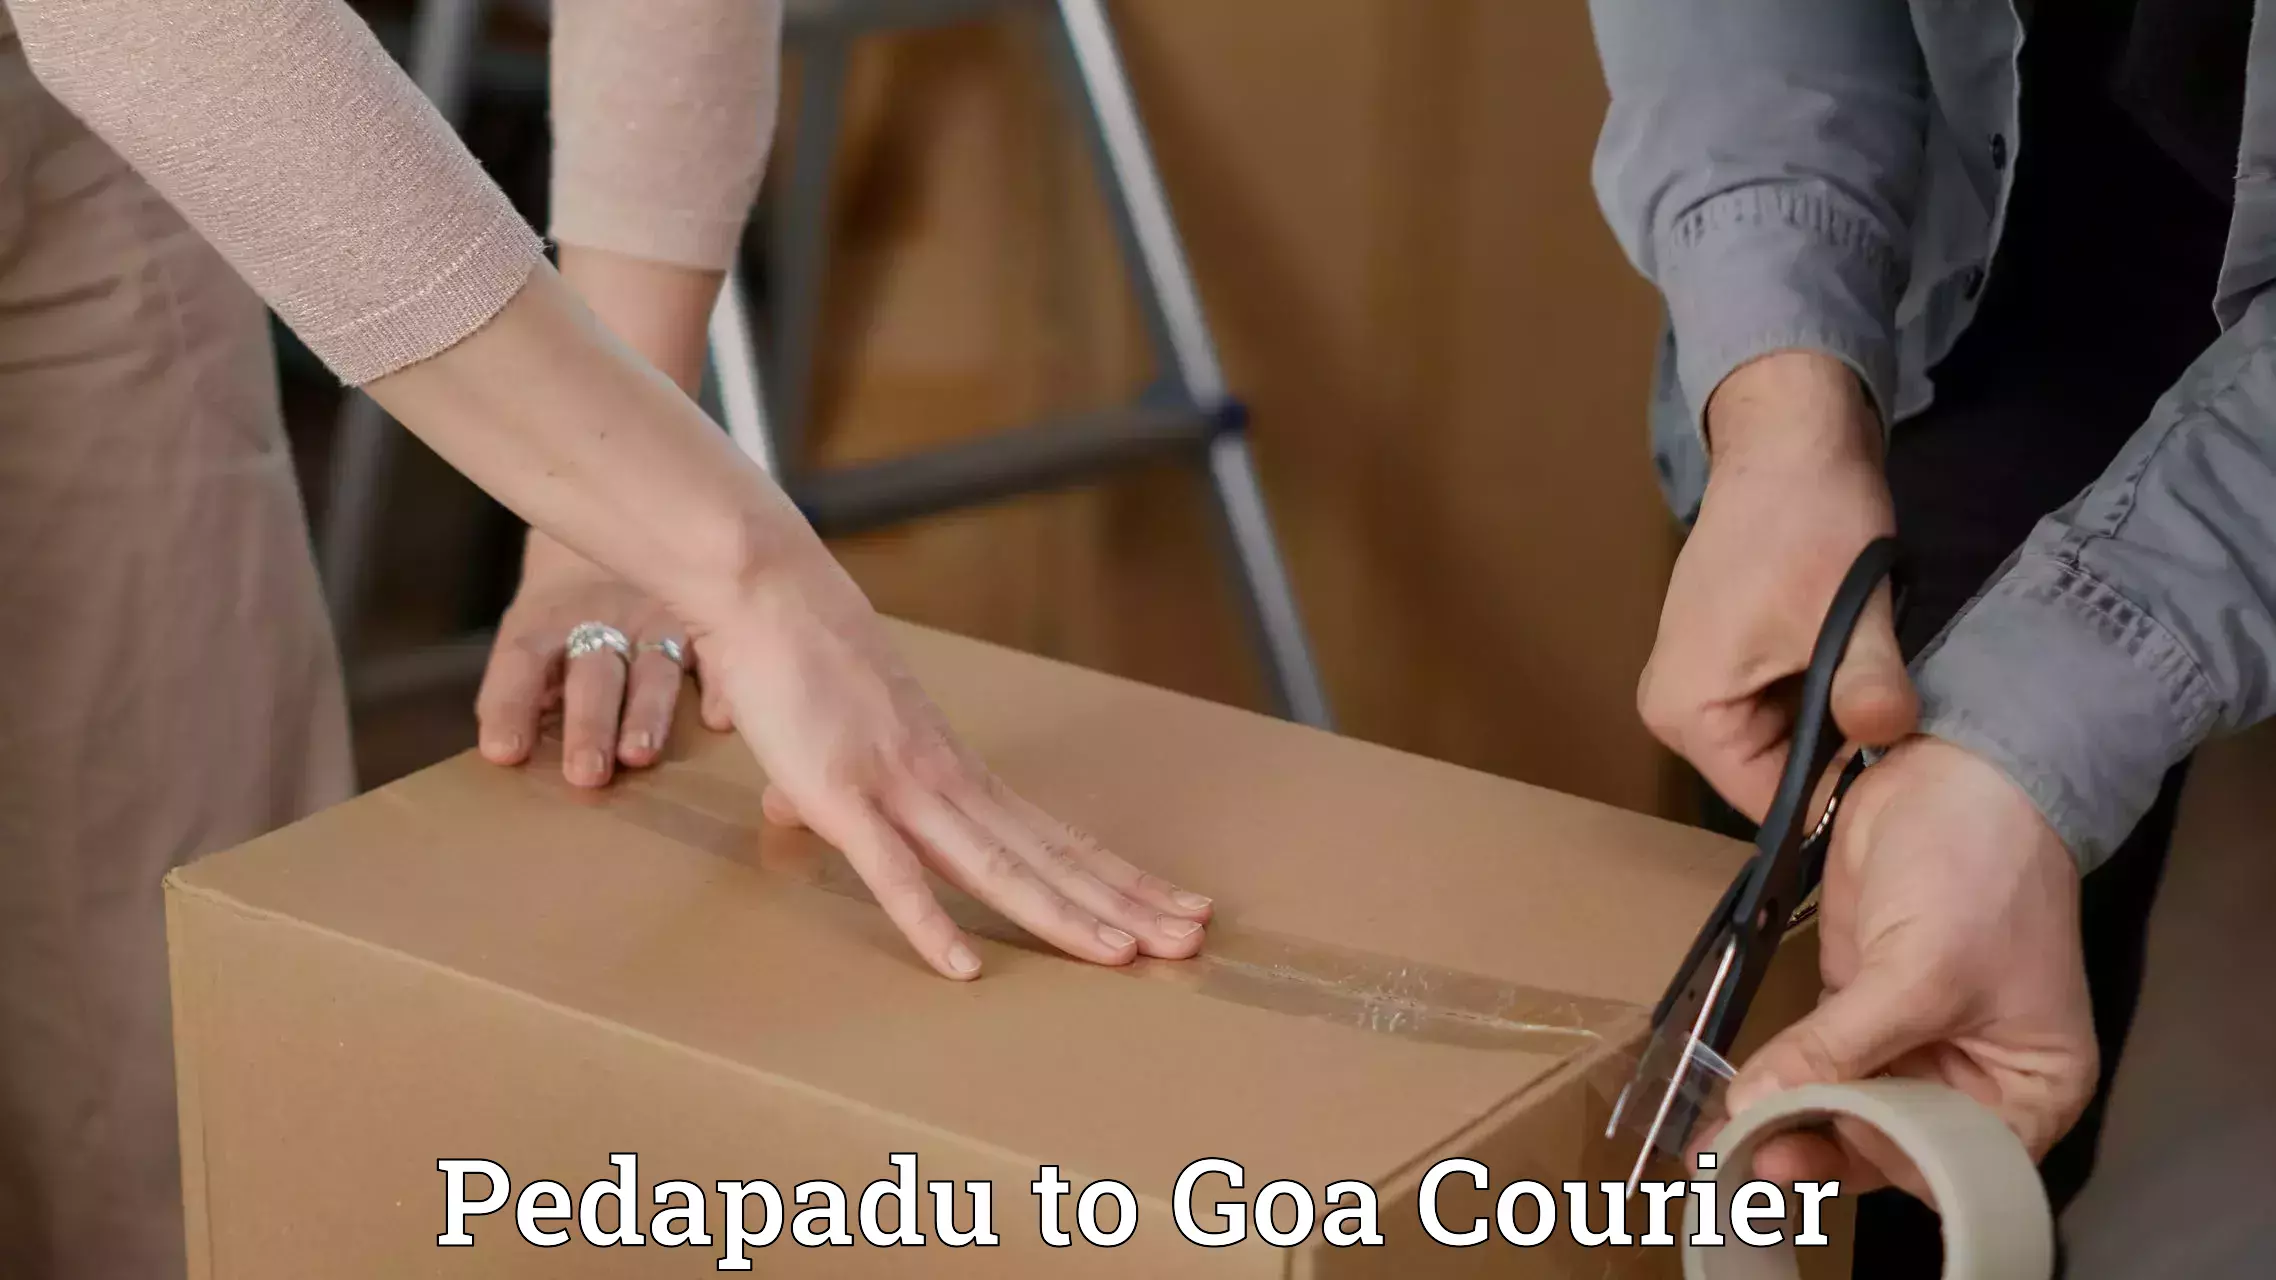 User-friendly courier app Pedapadu to Ponda